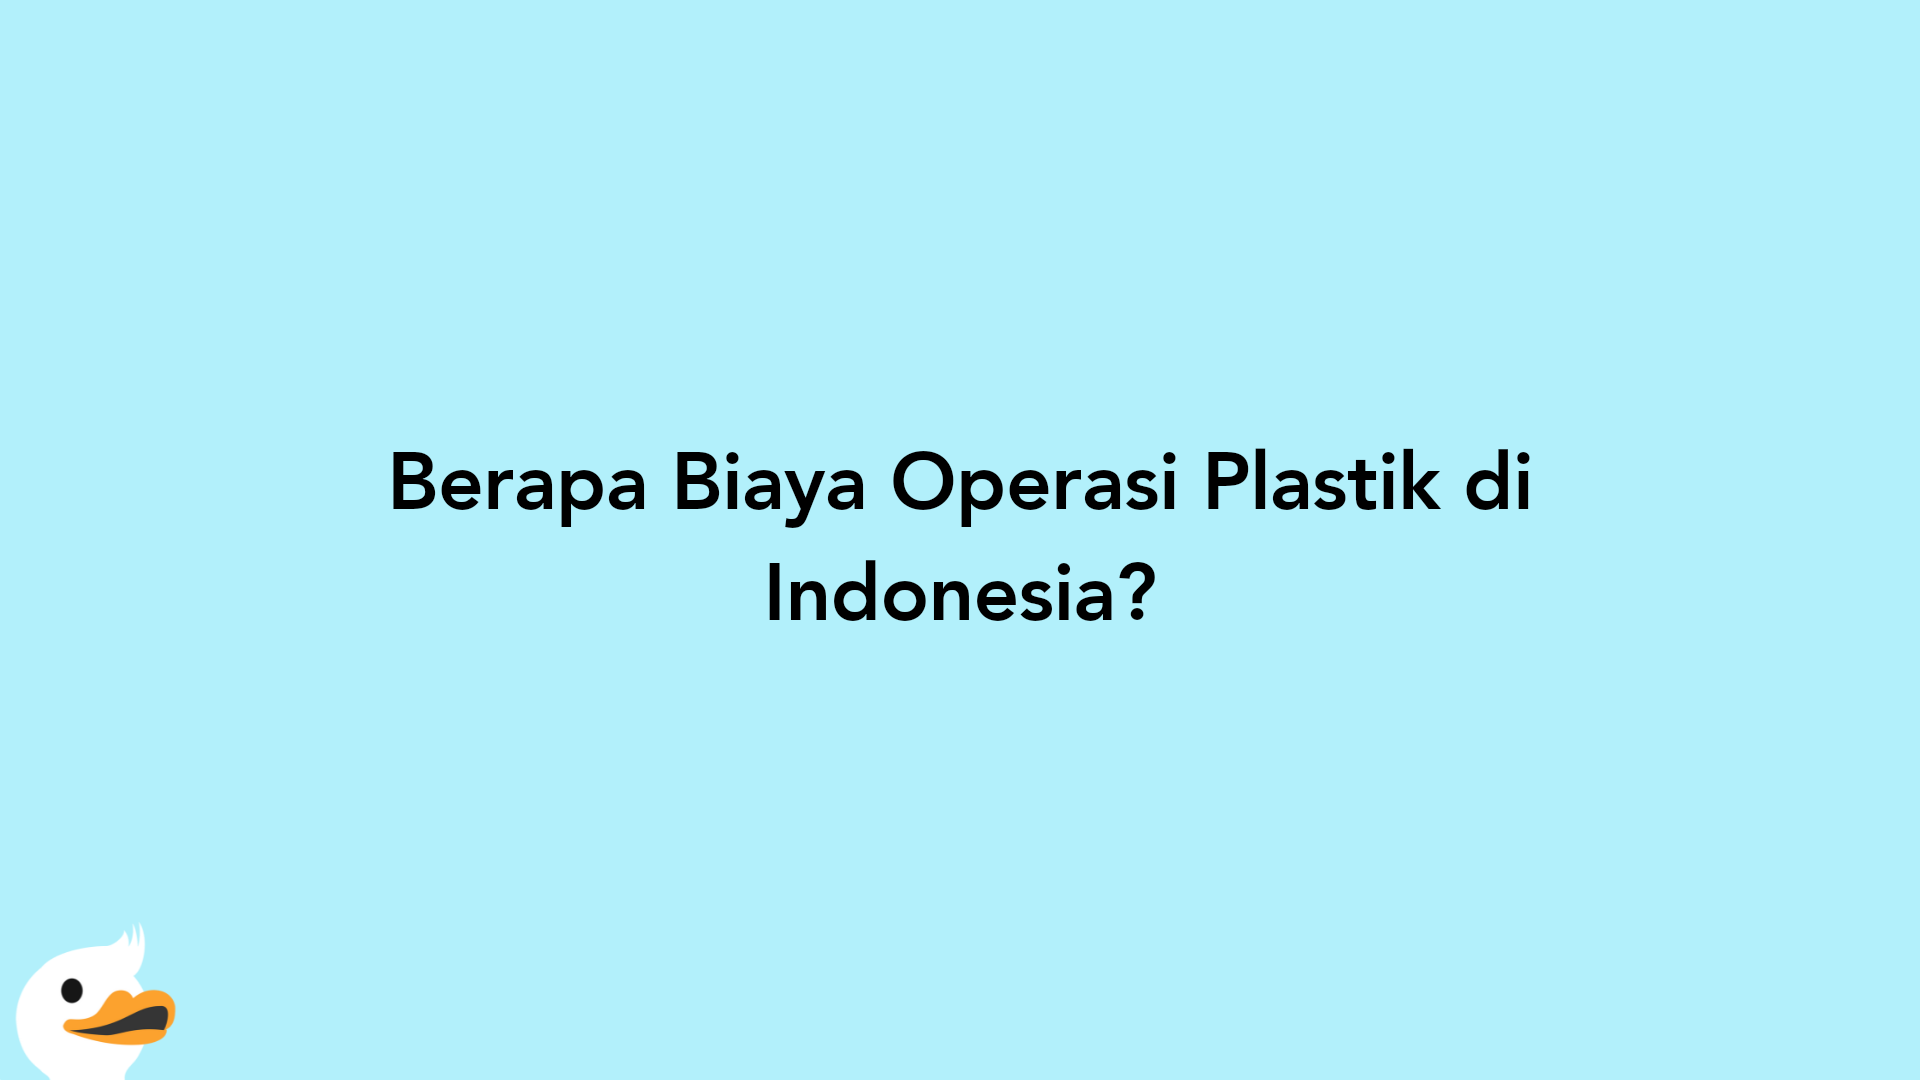 Berapa Biaya Operasi Plastik di Indonesia?